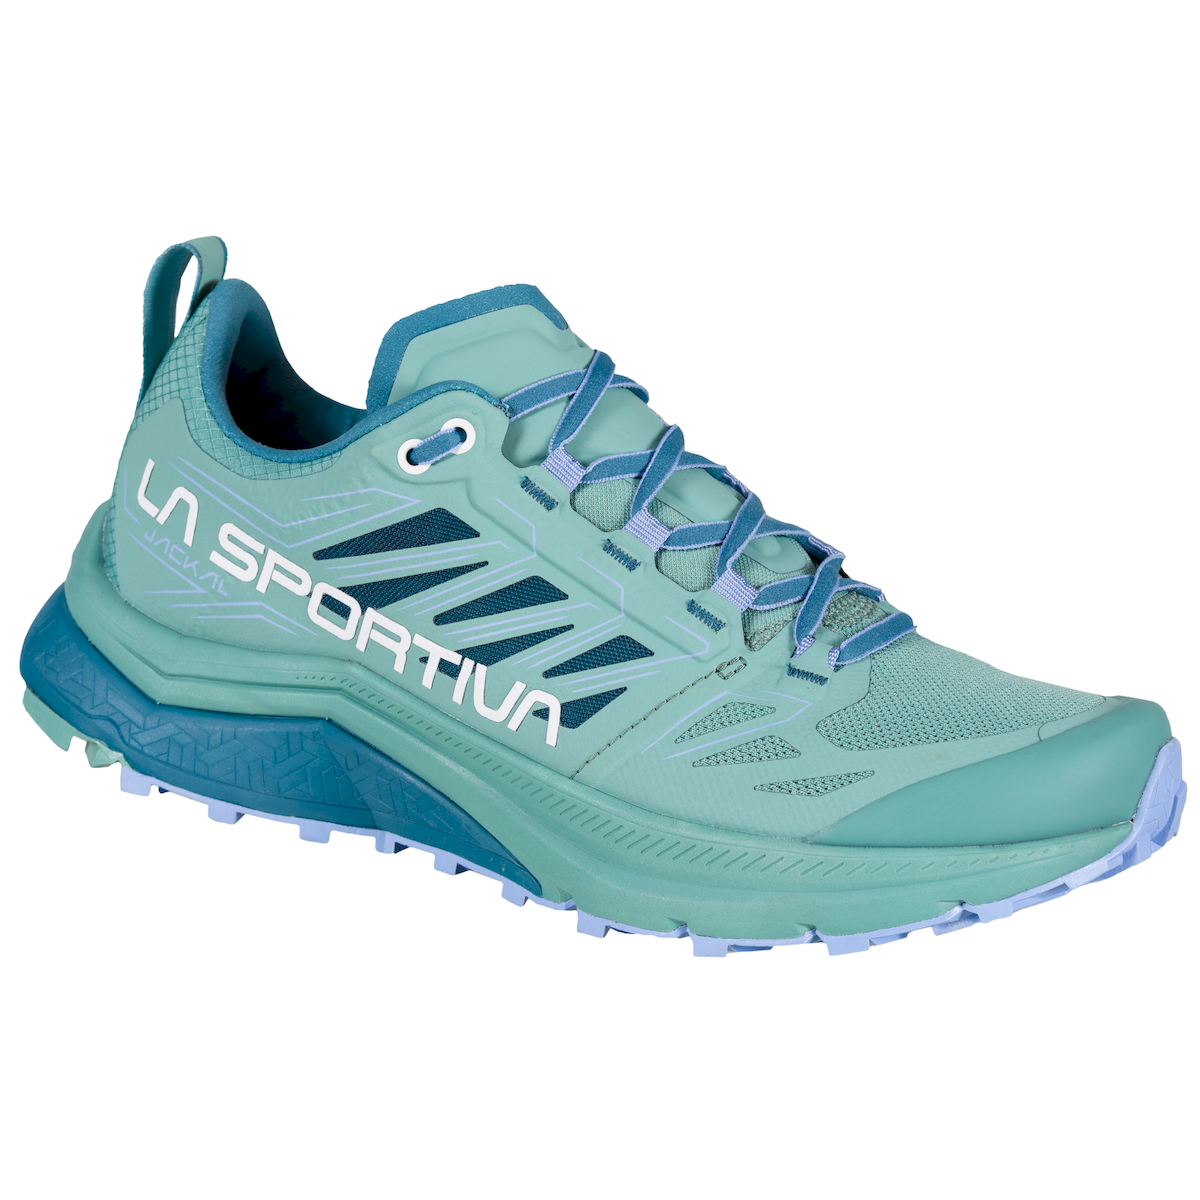 La Sportiva Jackal - Trail running shoes - Women's